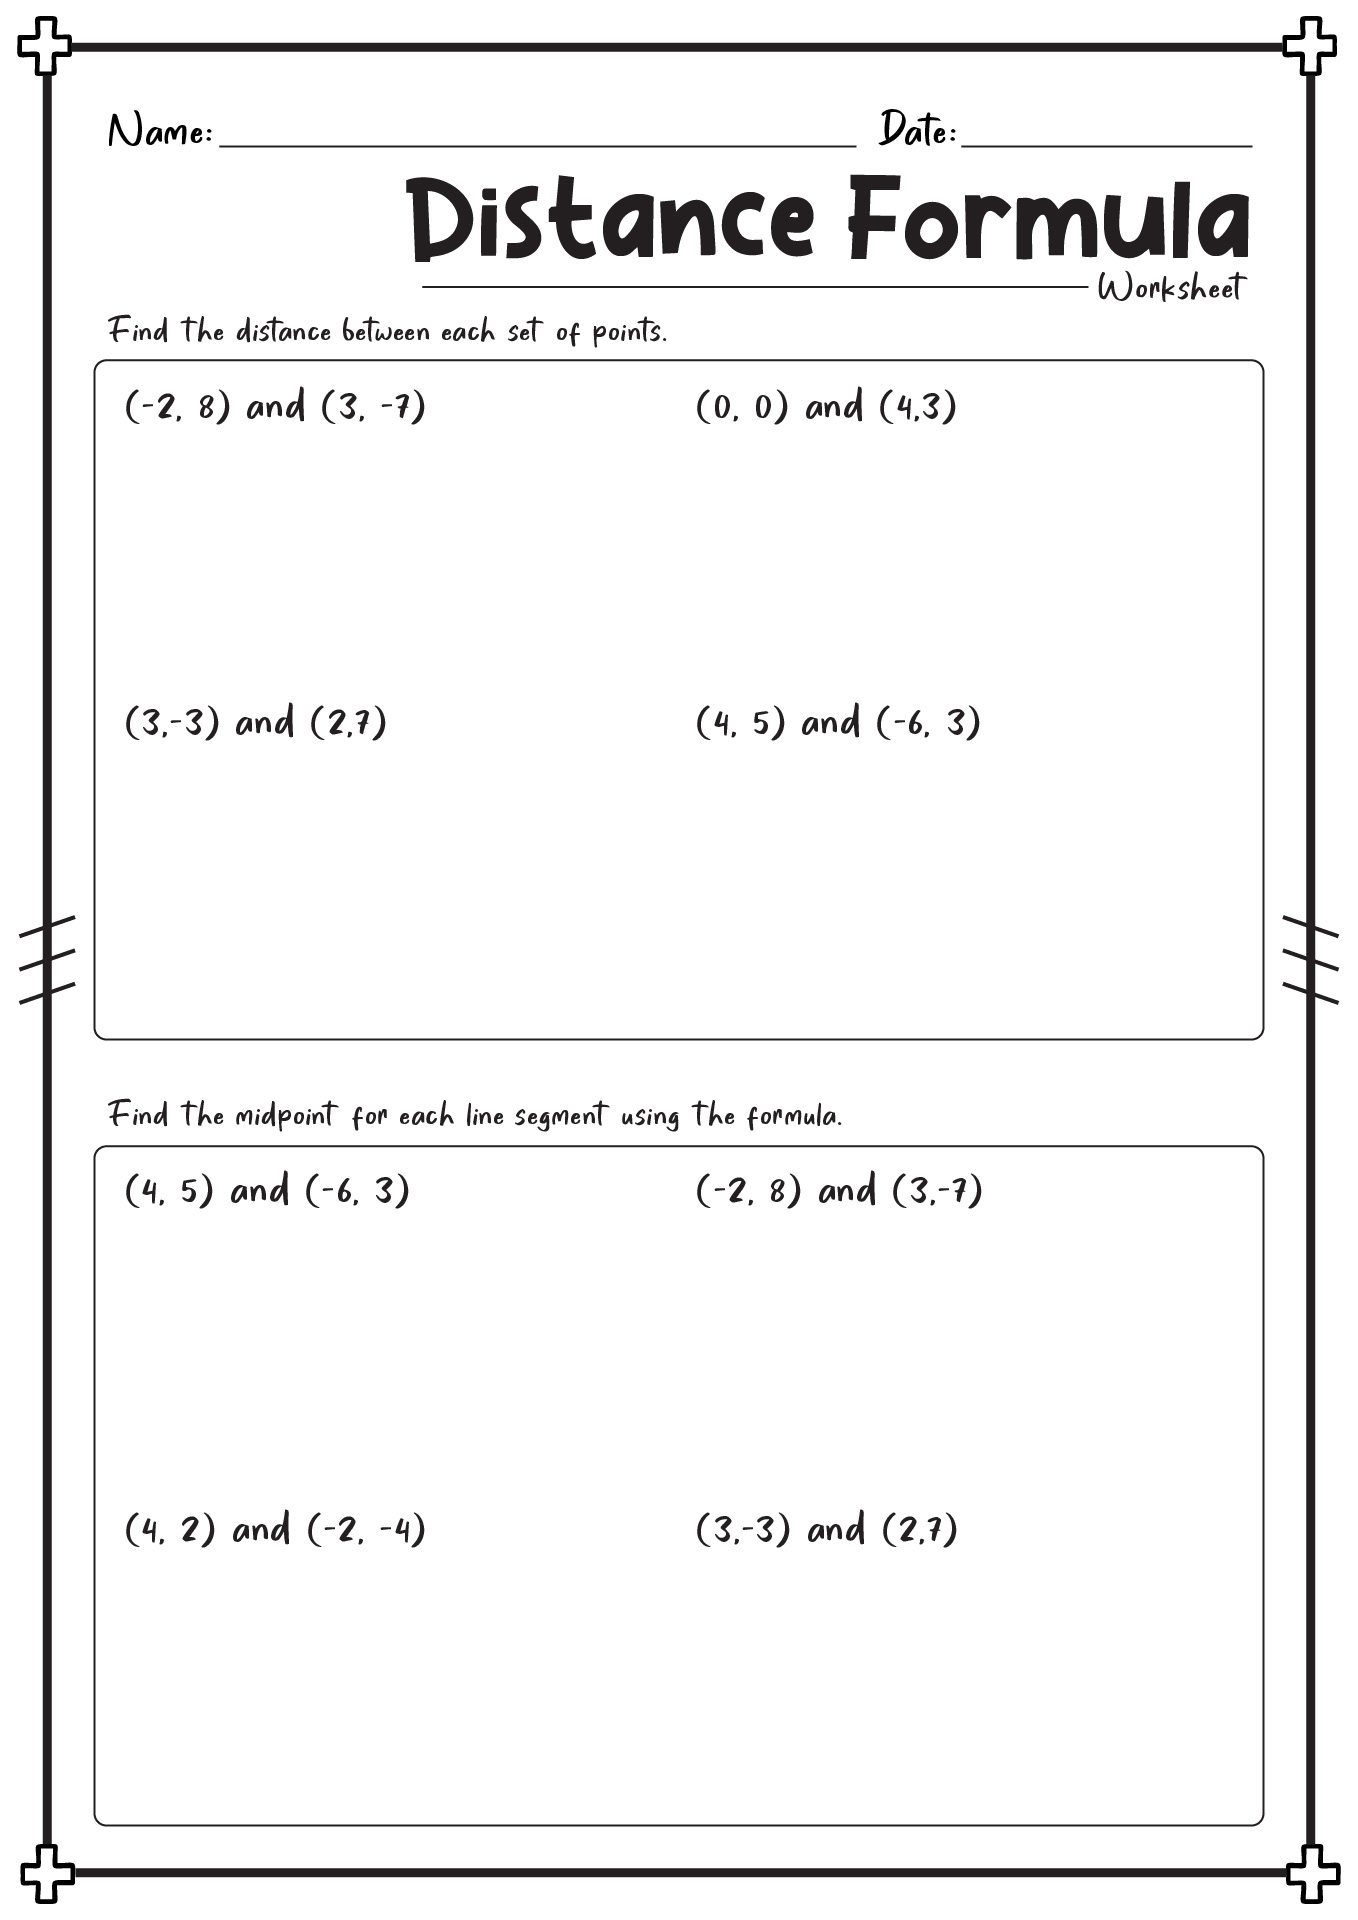 Distance Formula Worksheet Image